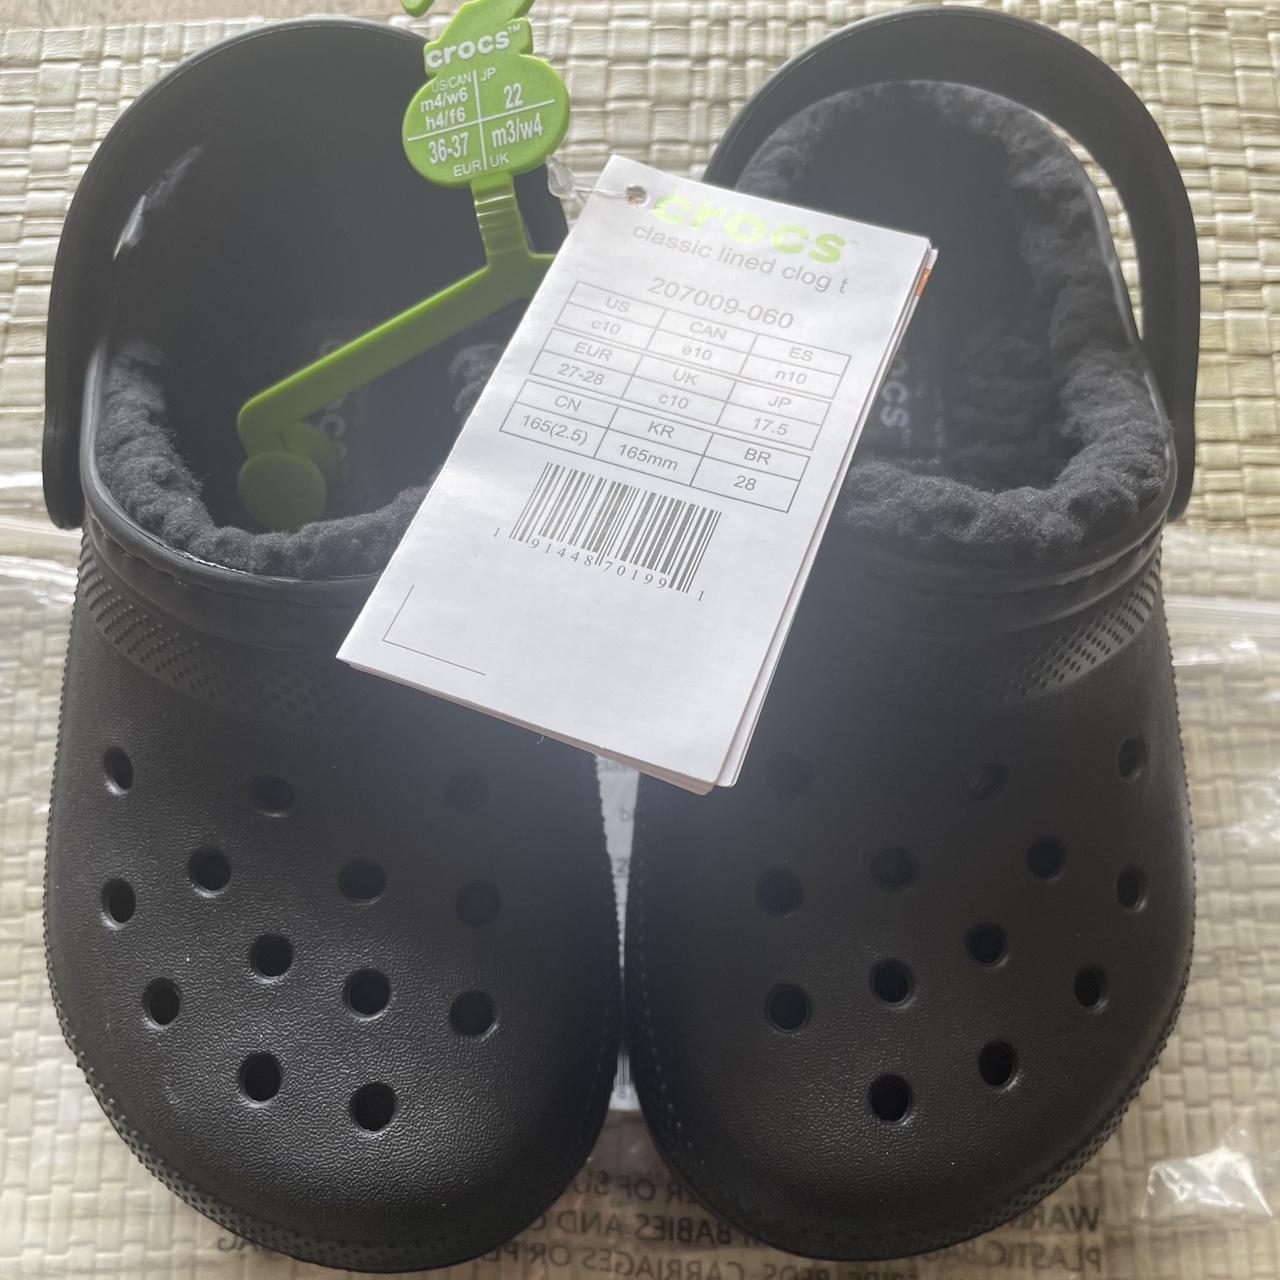 Crocs Black Slides